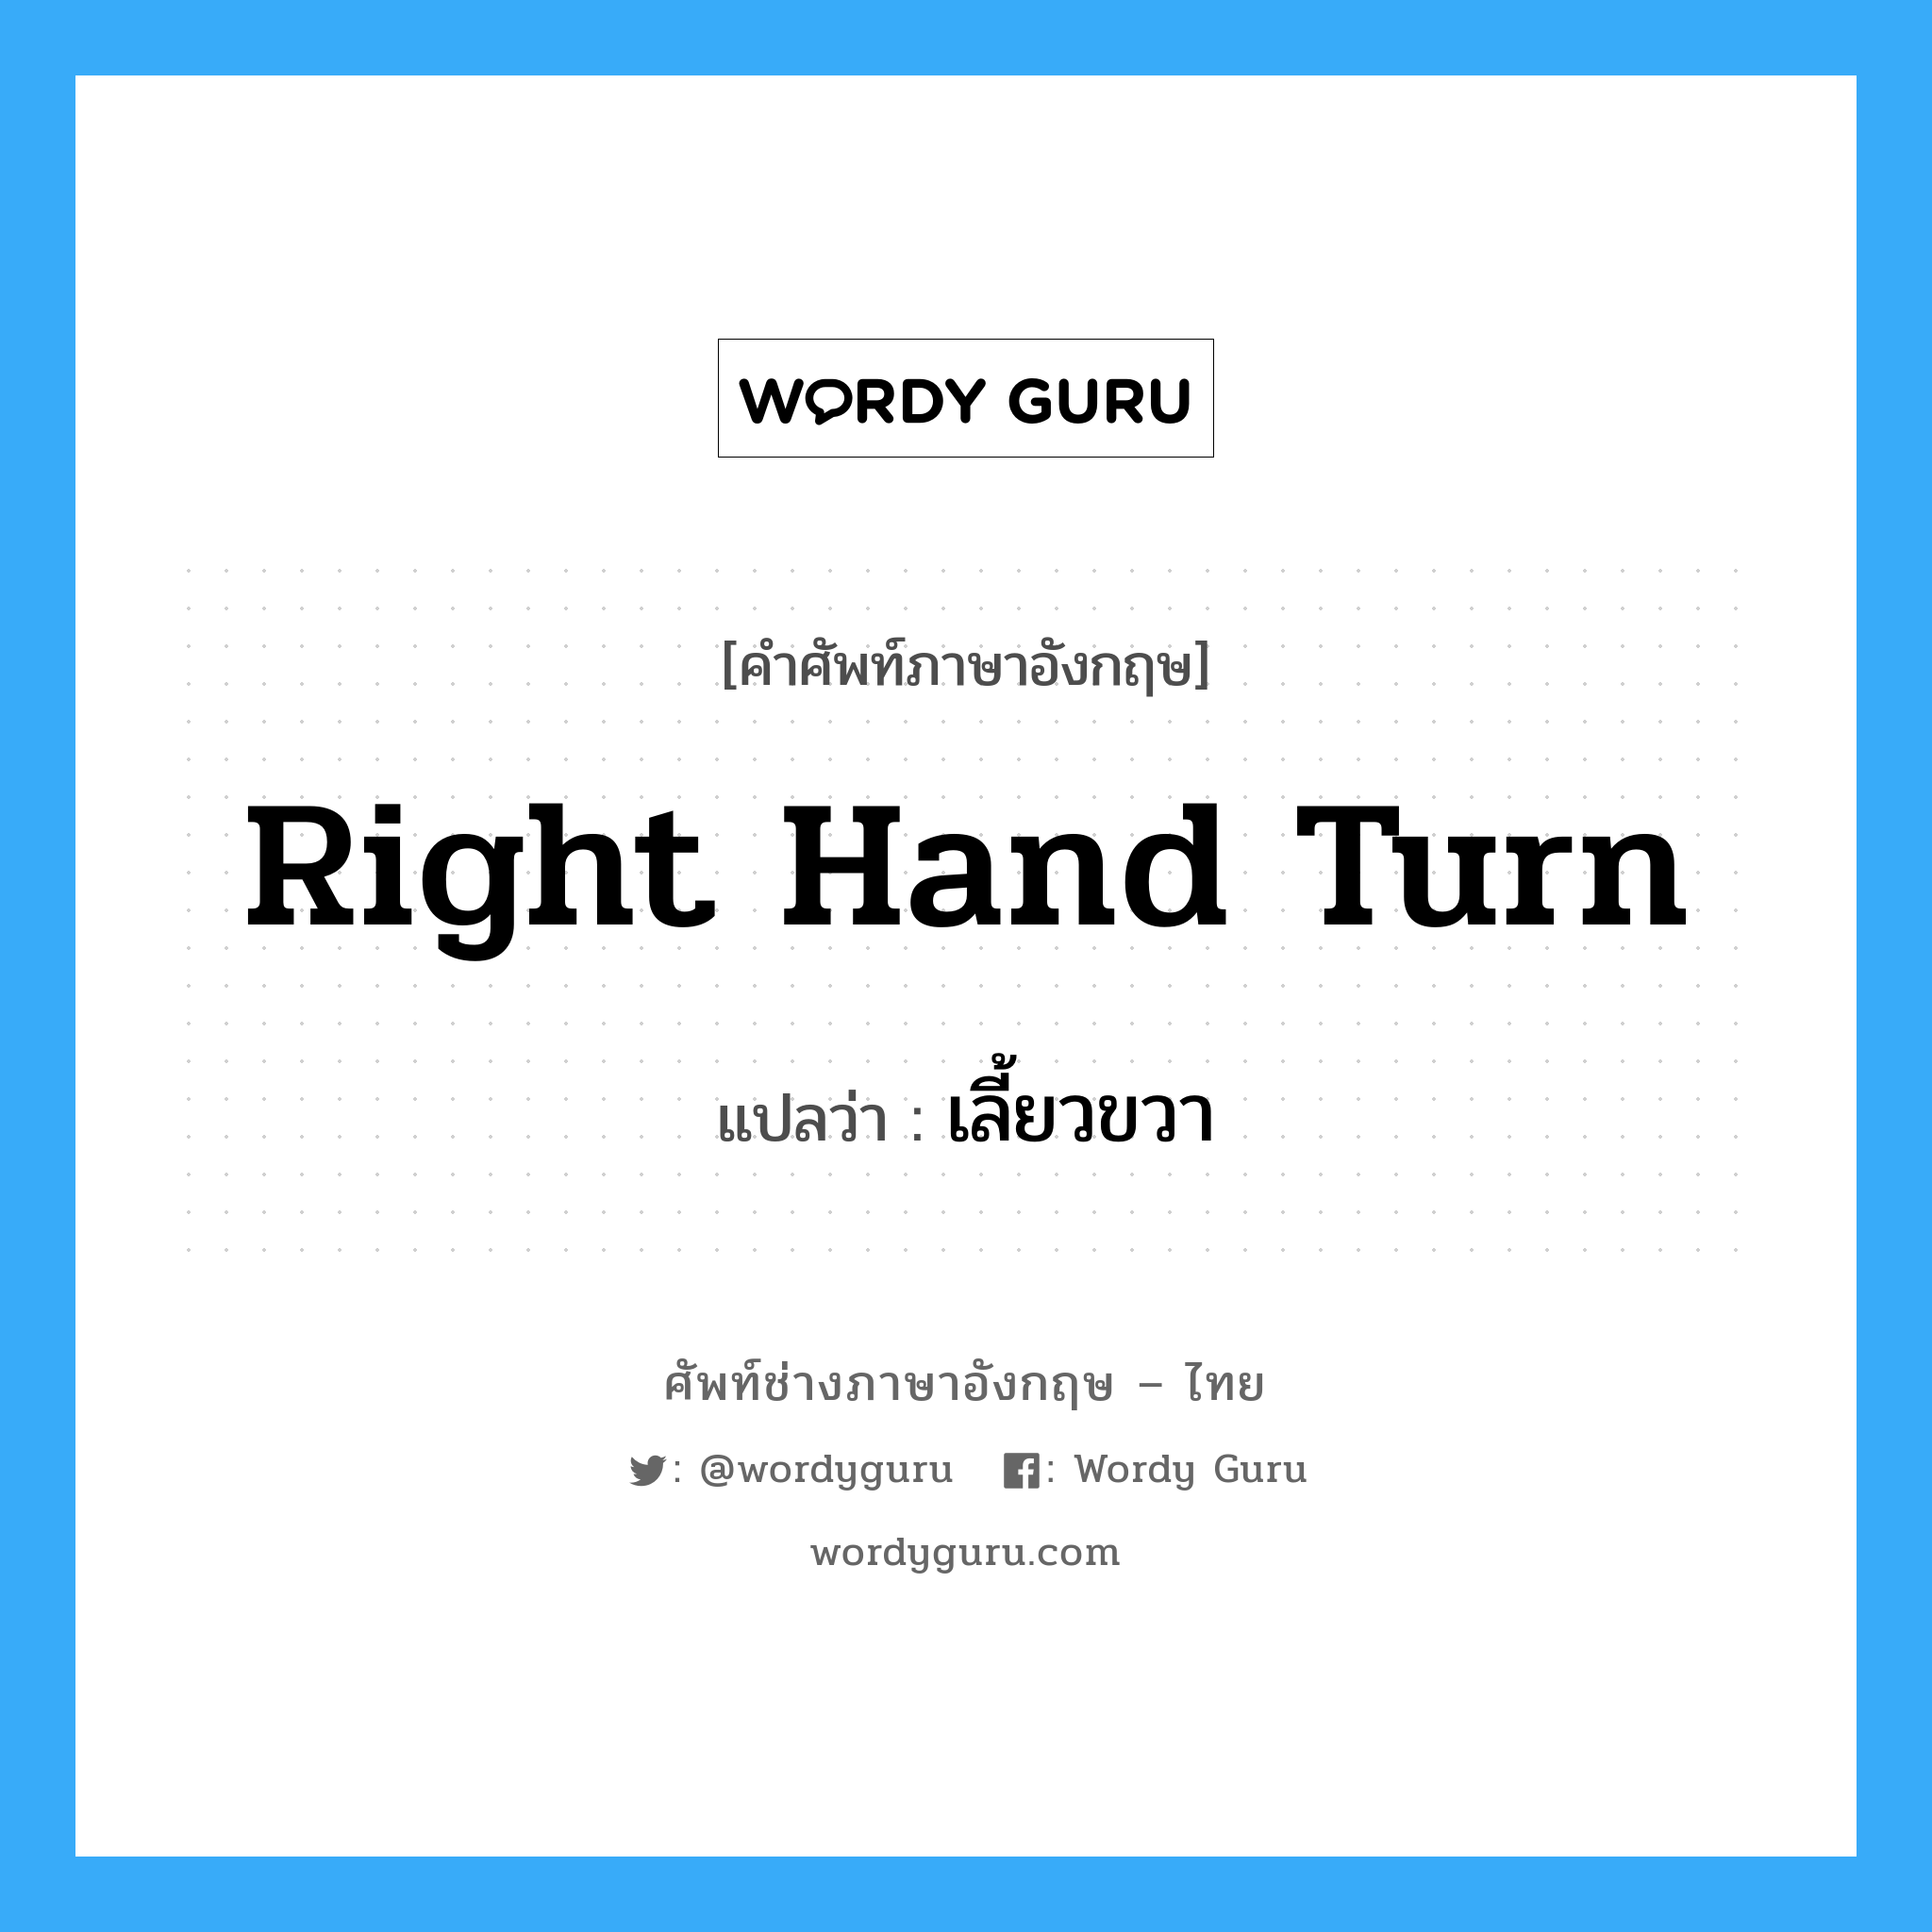 right hand turn แปลว่า?, คำศัพท์ช่างภาษาอังกฤษ - ไทย right hand turn คำศัพท์ภาษาอังกฤษ right hand turn แปลว่า เลี้ยวขวา